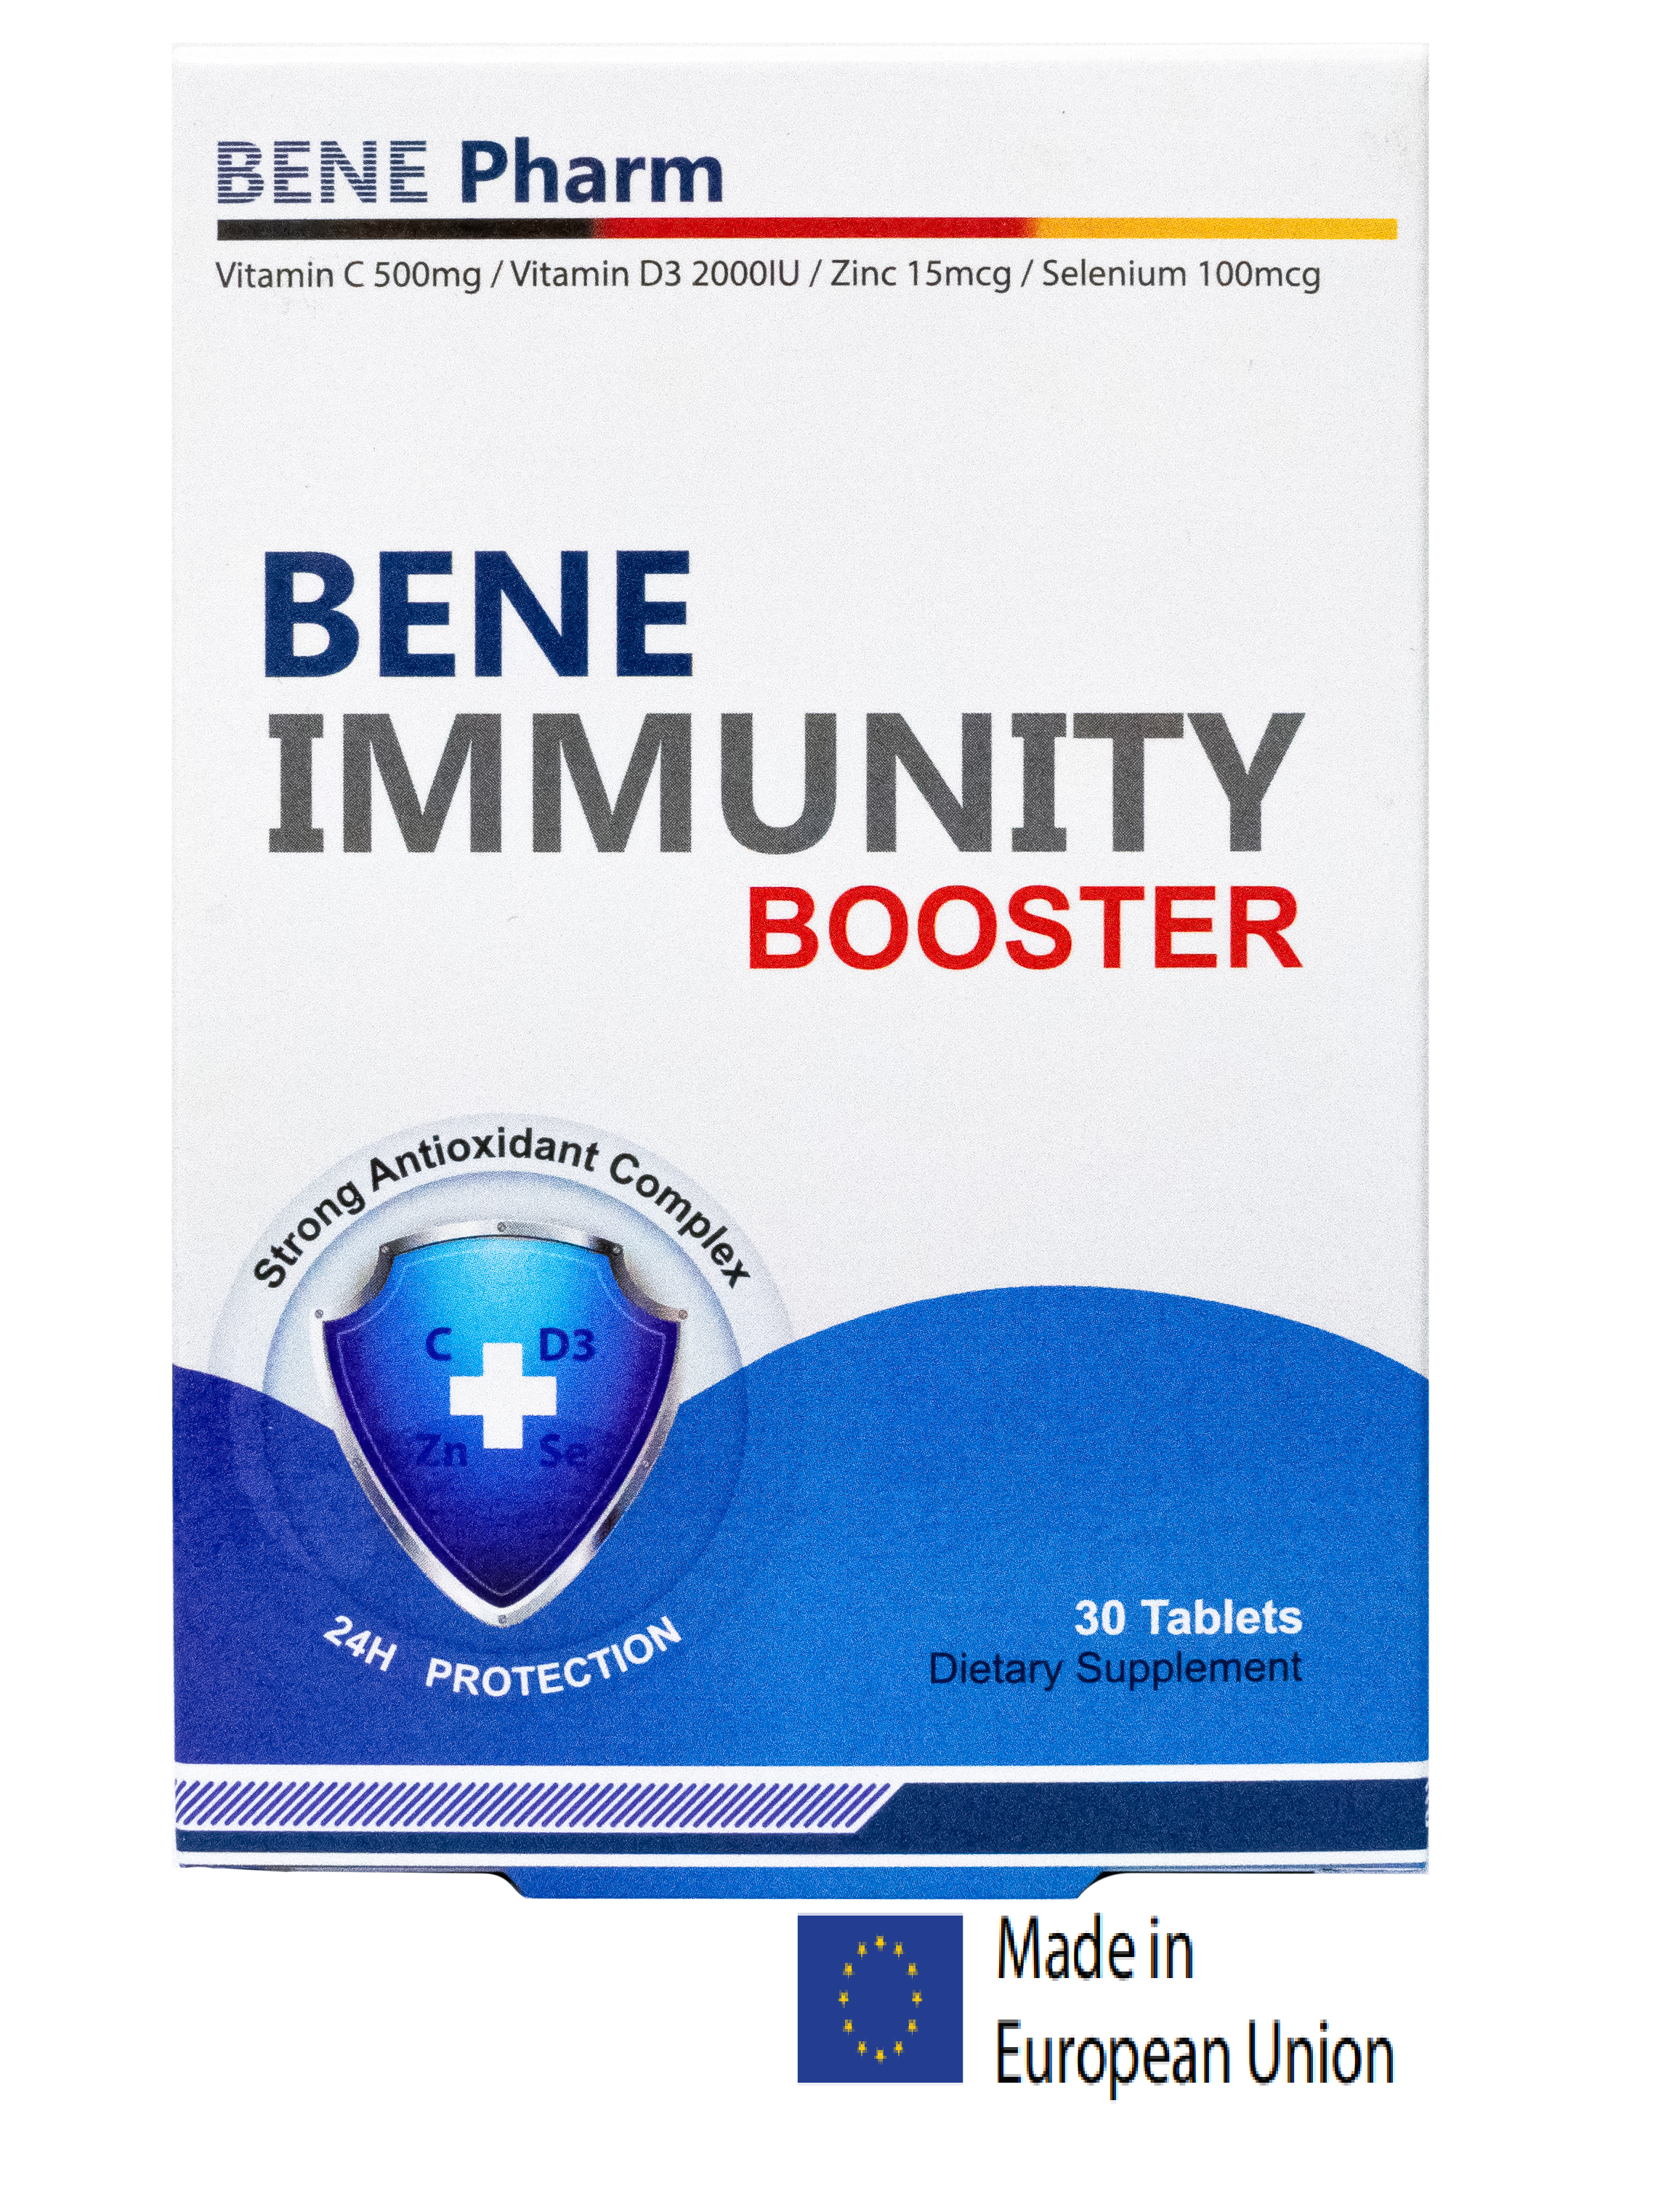 ბენე იმუნიტეტის ბუსტერი / BENE Immunity Booster